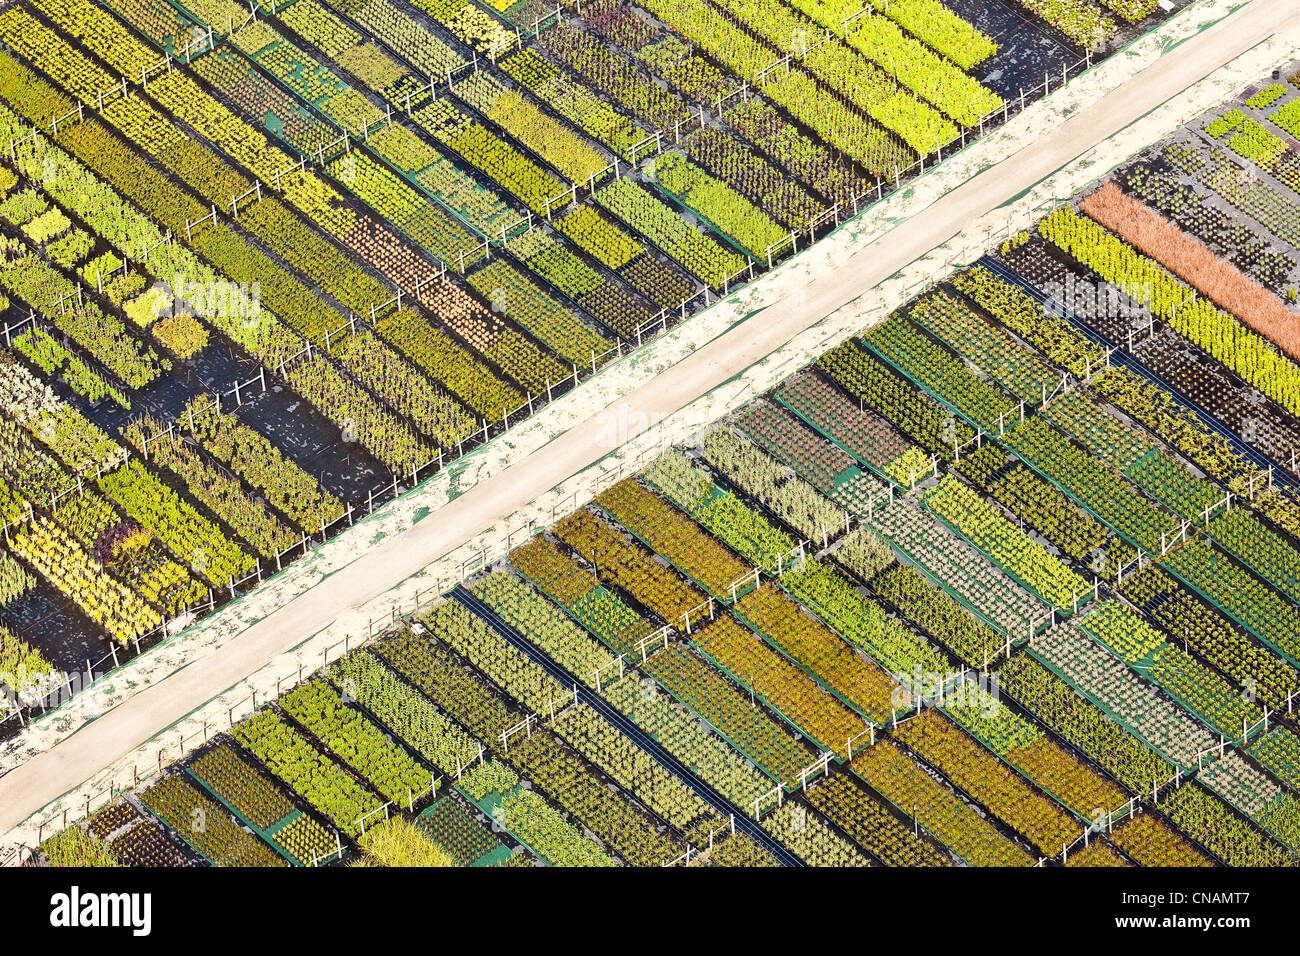 Francia, Loire-Atlantique, Guérande, horticultura (fotografía aérea) Foto de stock